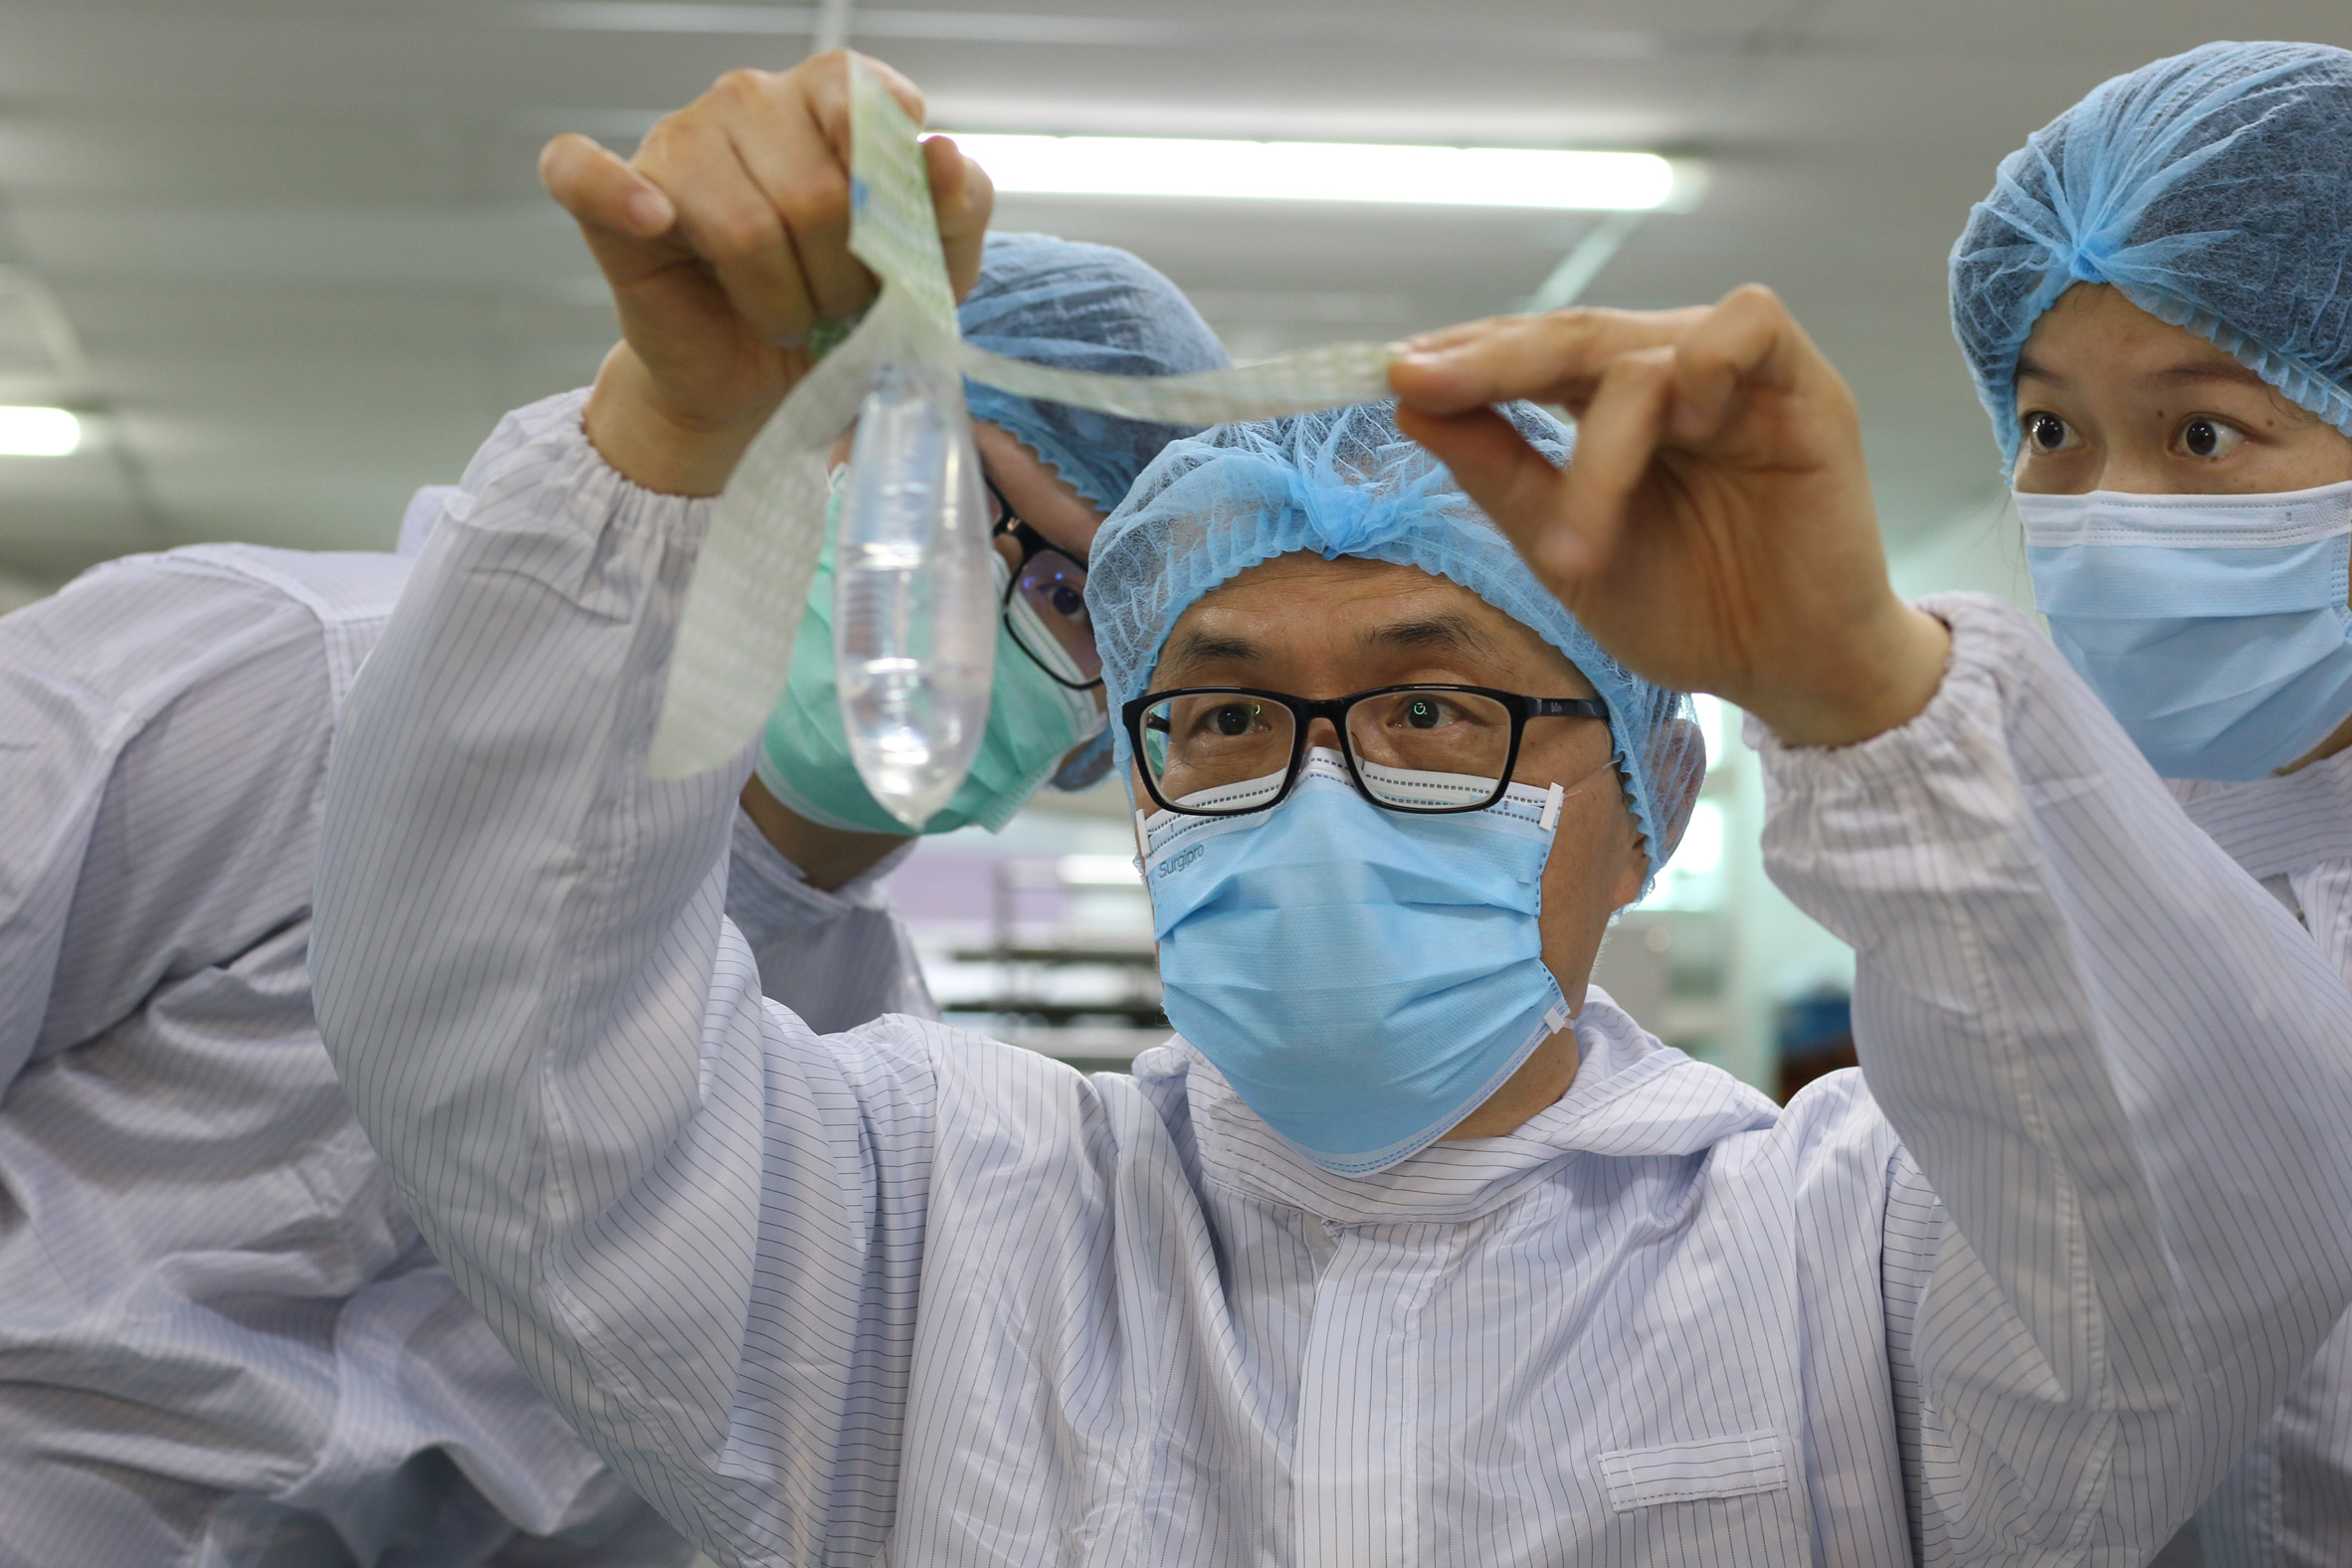 Doctors hold the Wondaleaf condom up for inspection